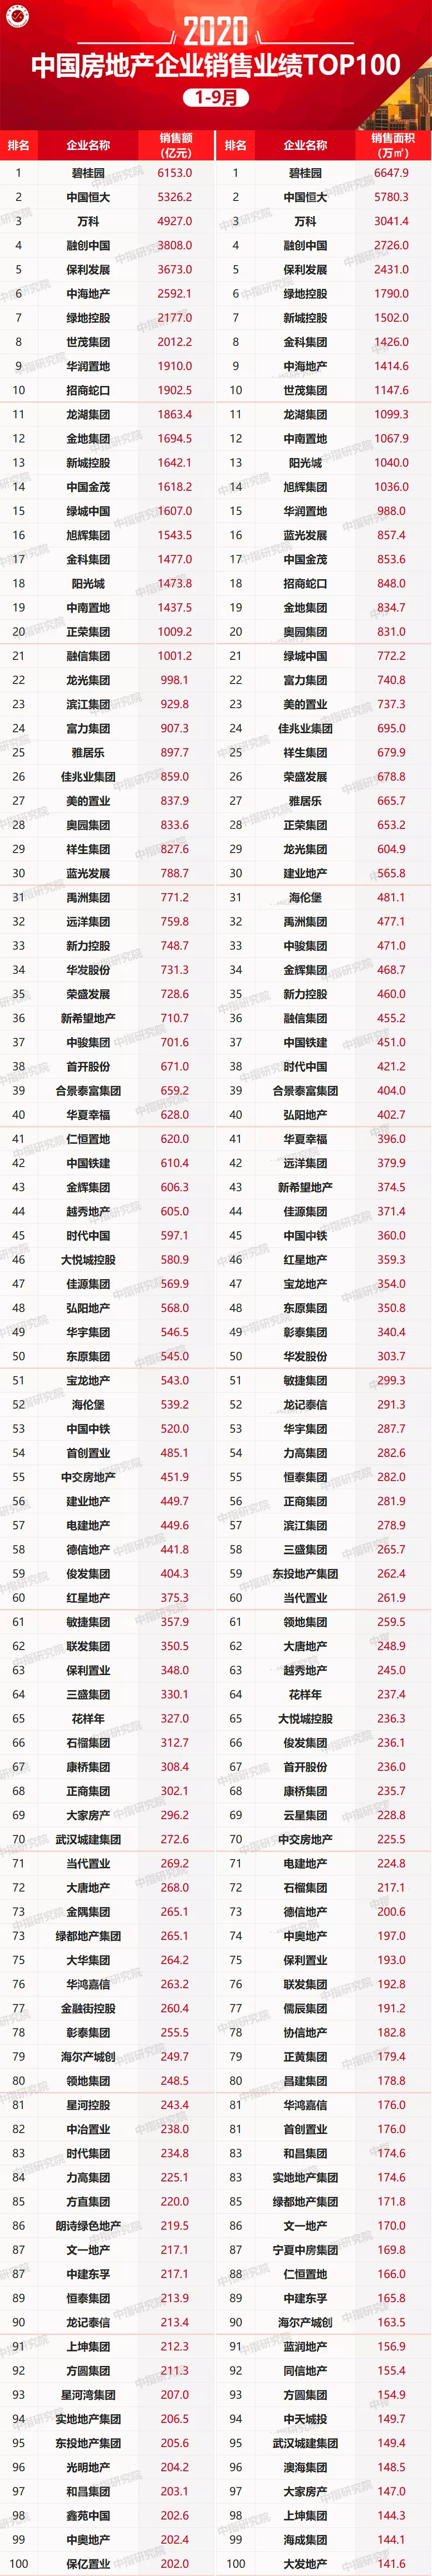 2020年1-9月中国房地产企业销售业绩100